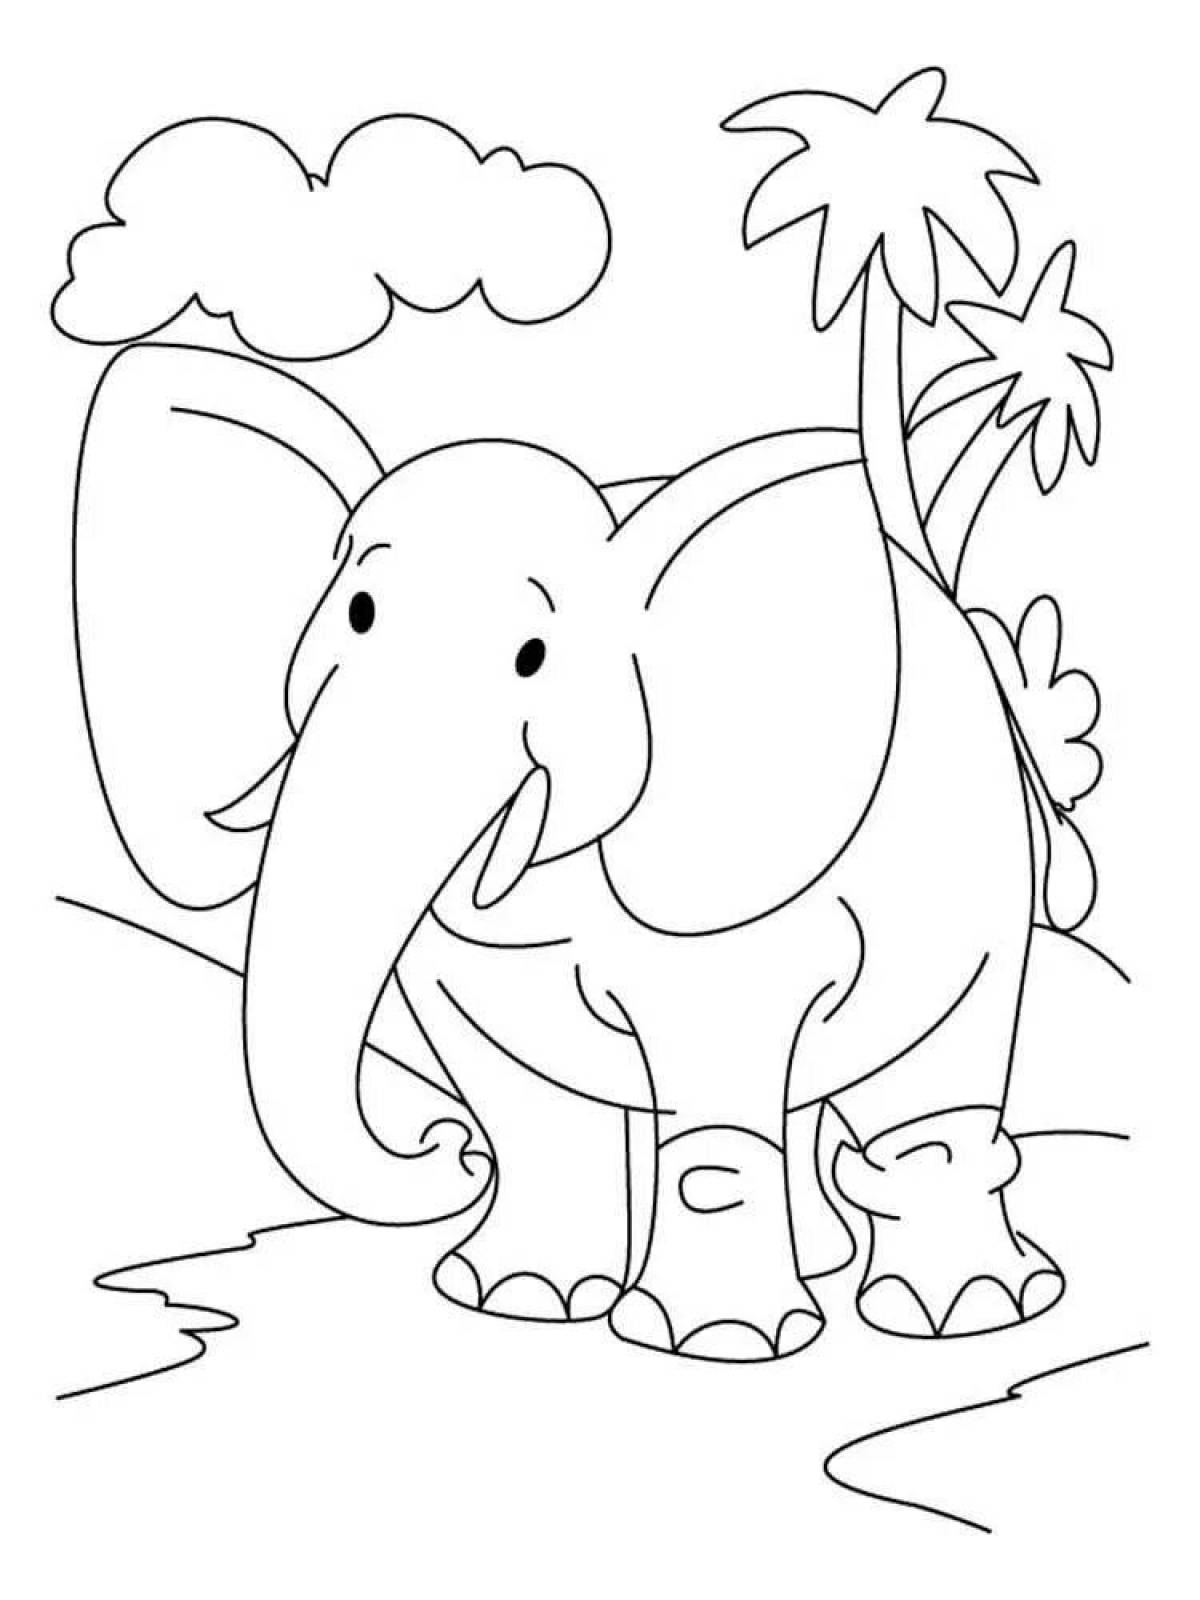 Увлекательная раскраска слонов для детей